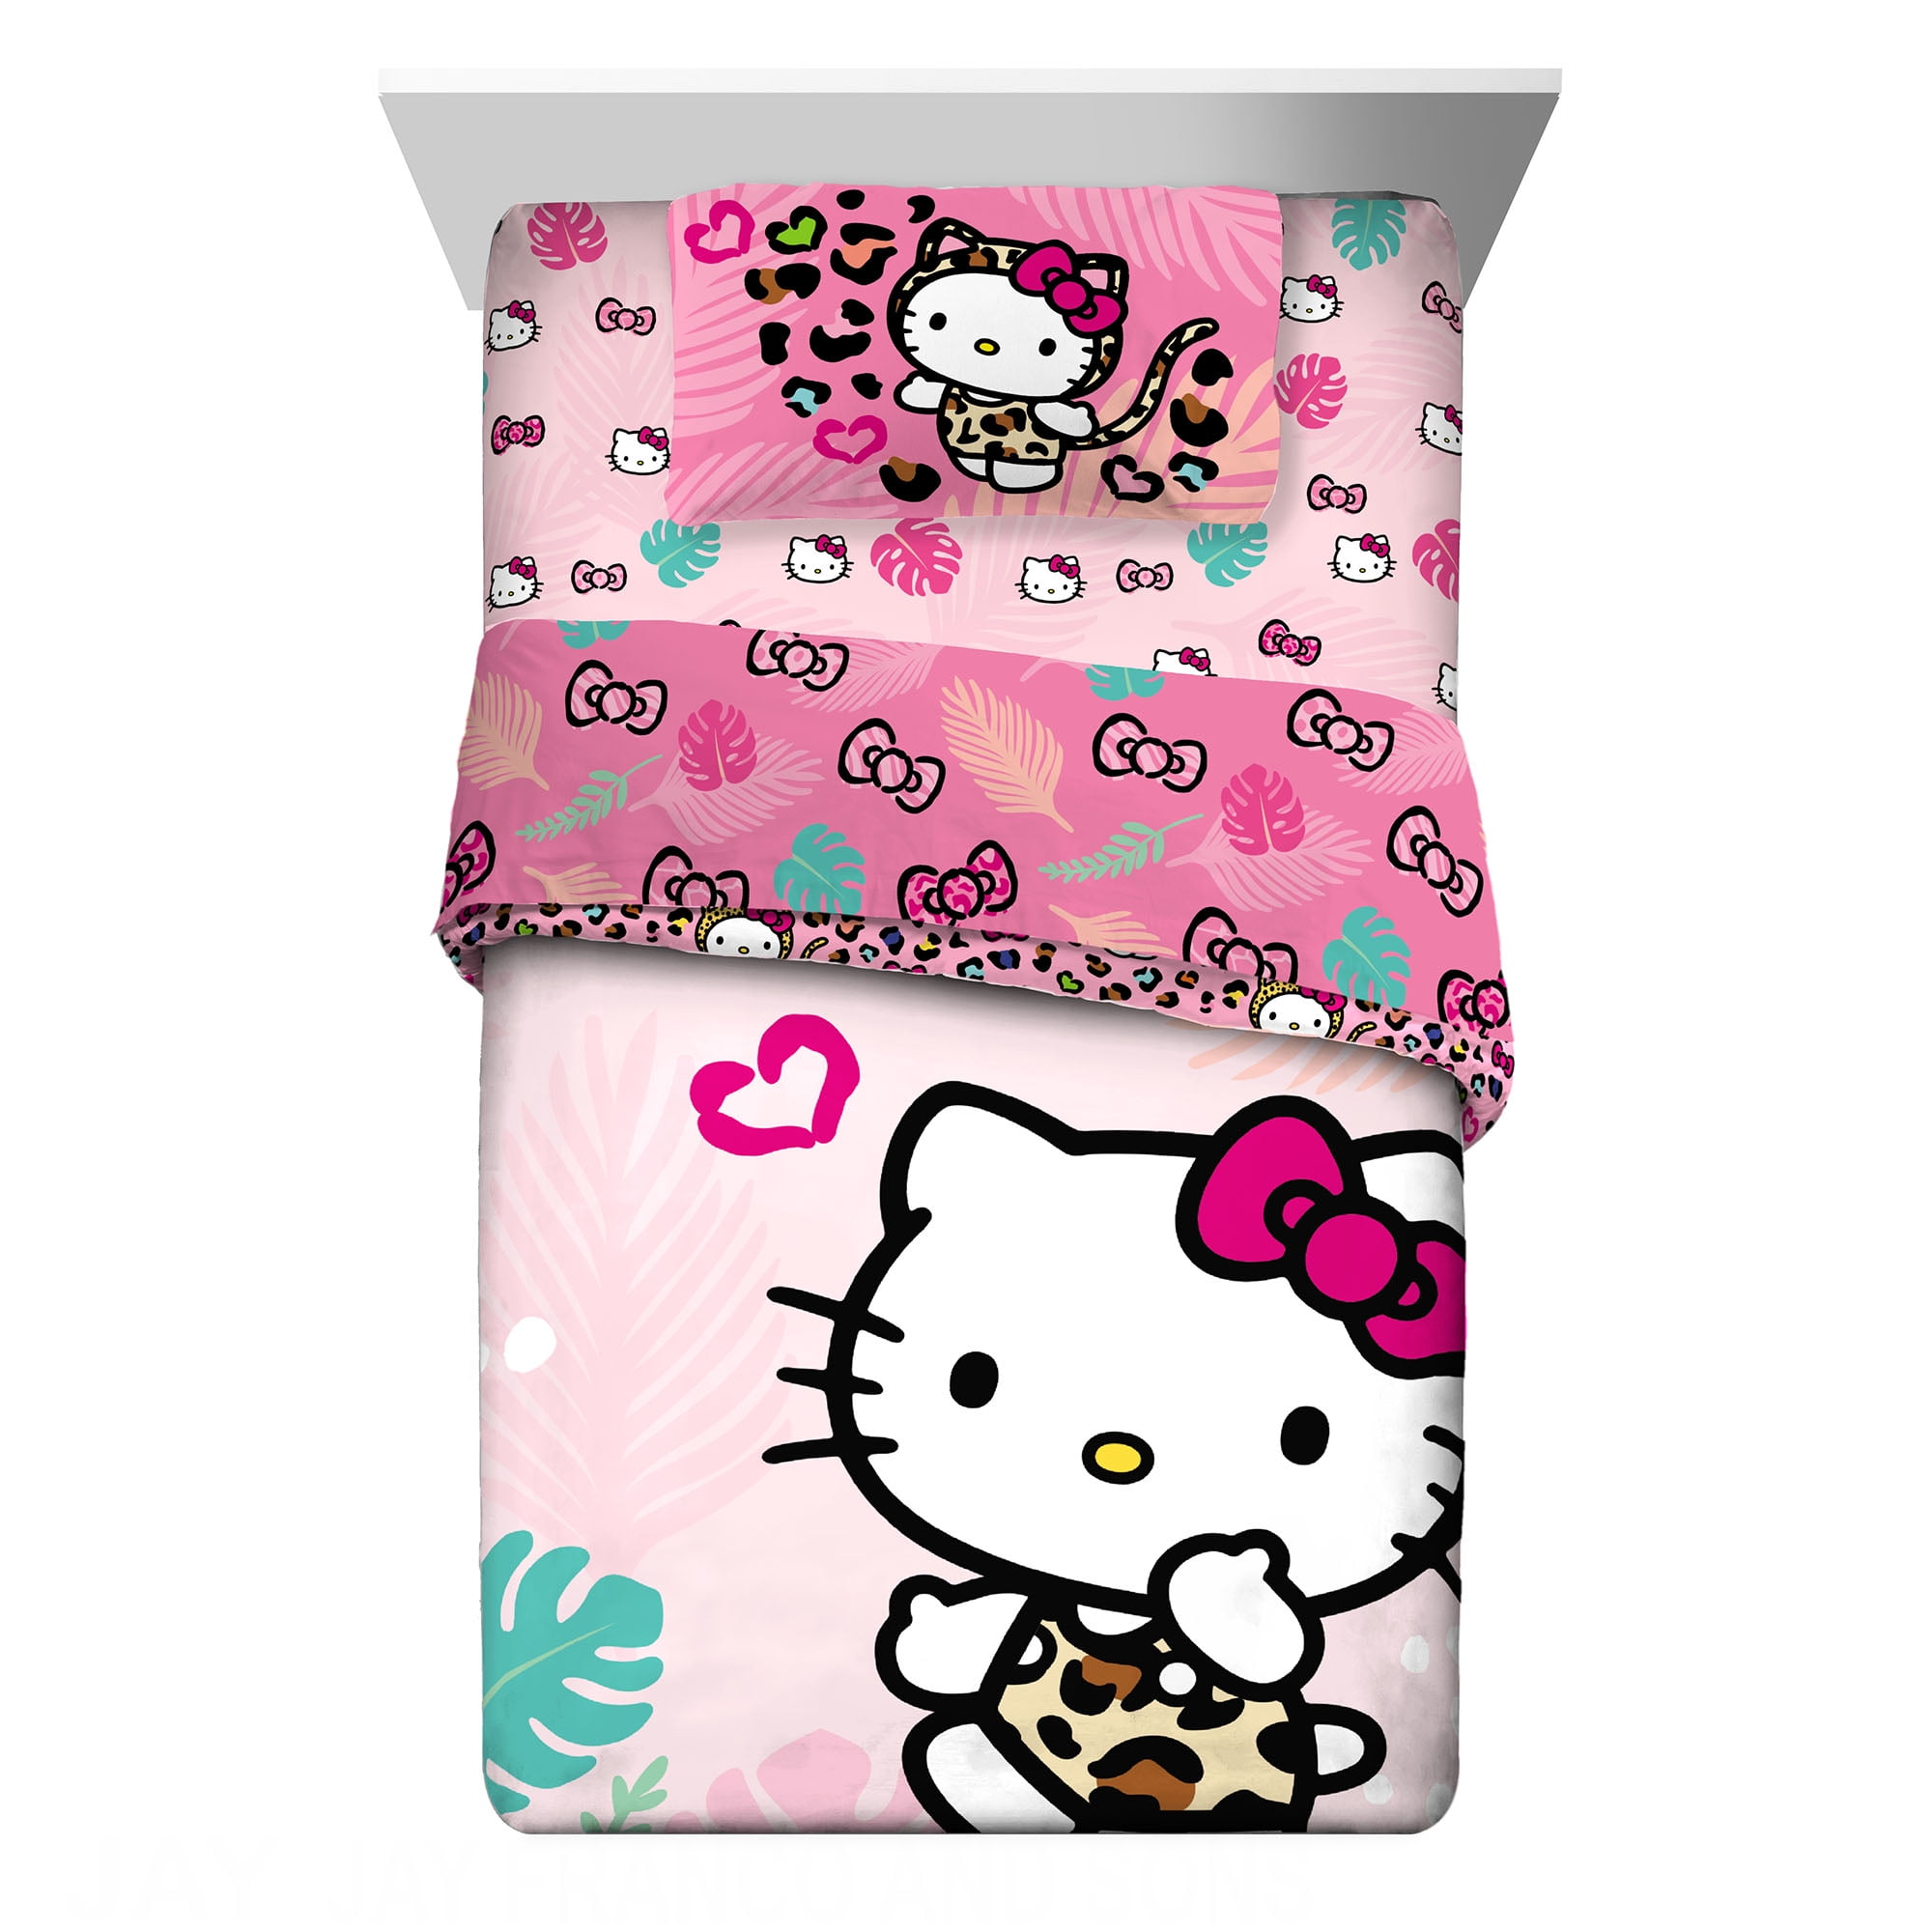 Hello Kitty Black And White Stripes Duvet Cover Girls Soft Bedding Cover Set 